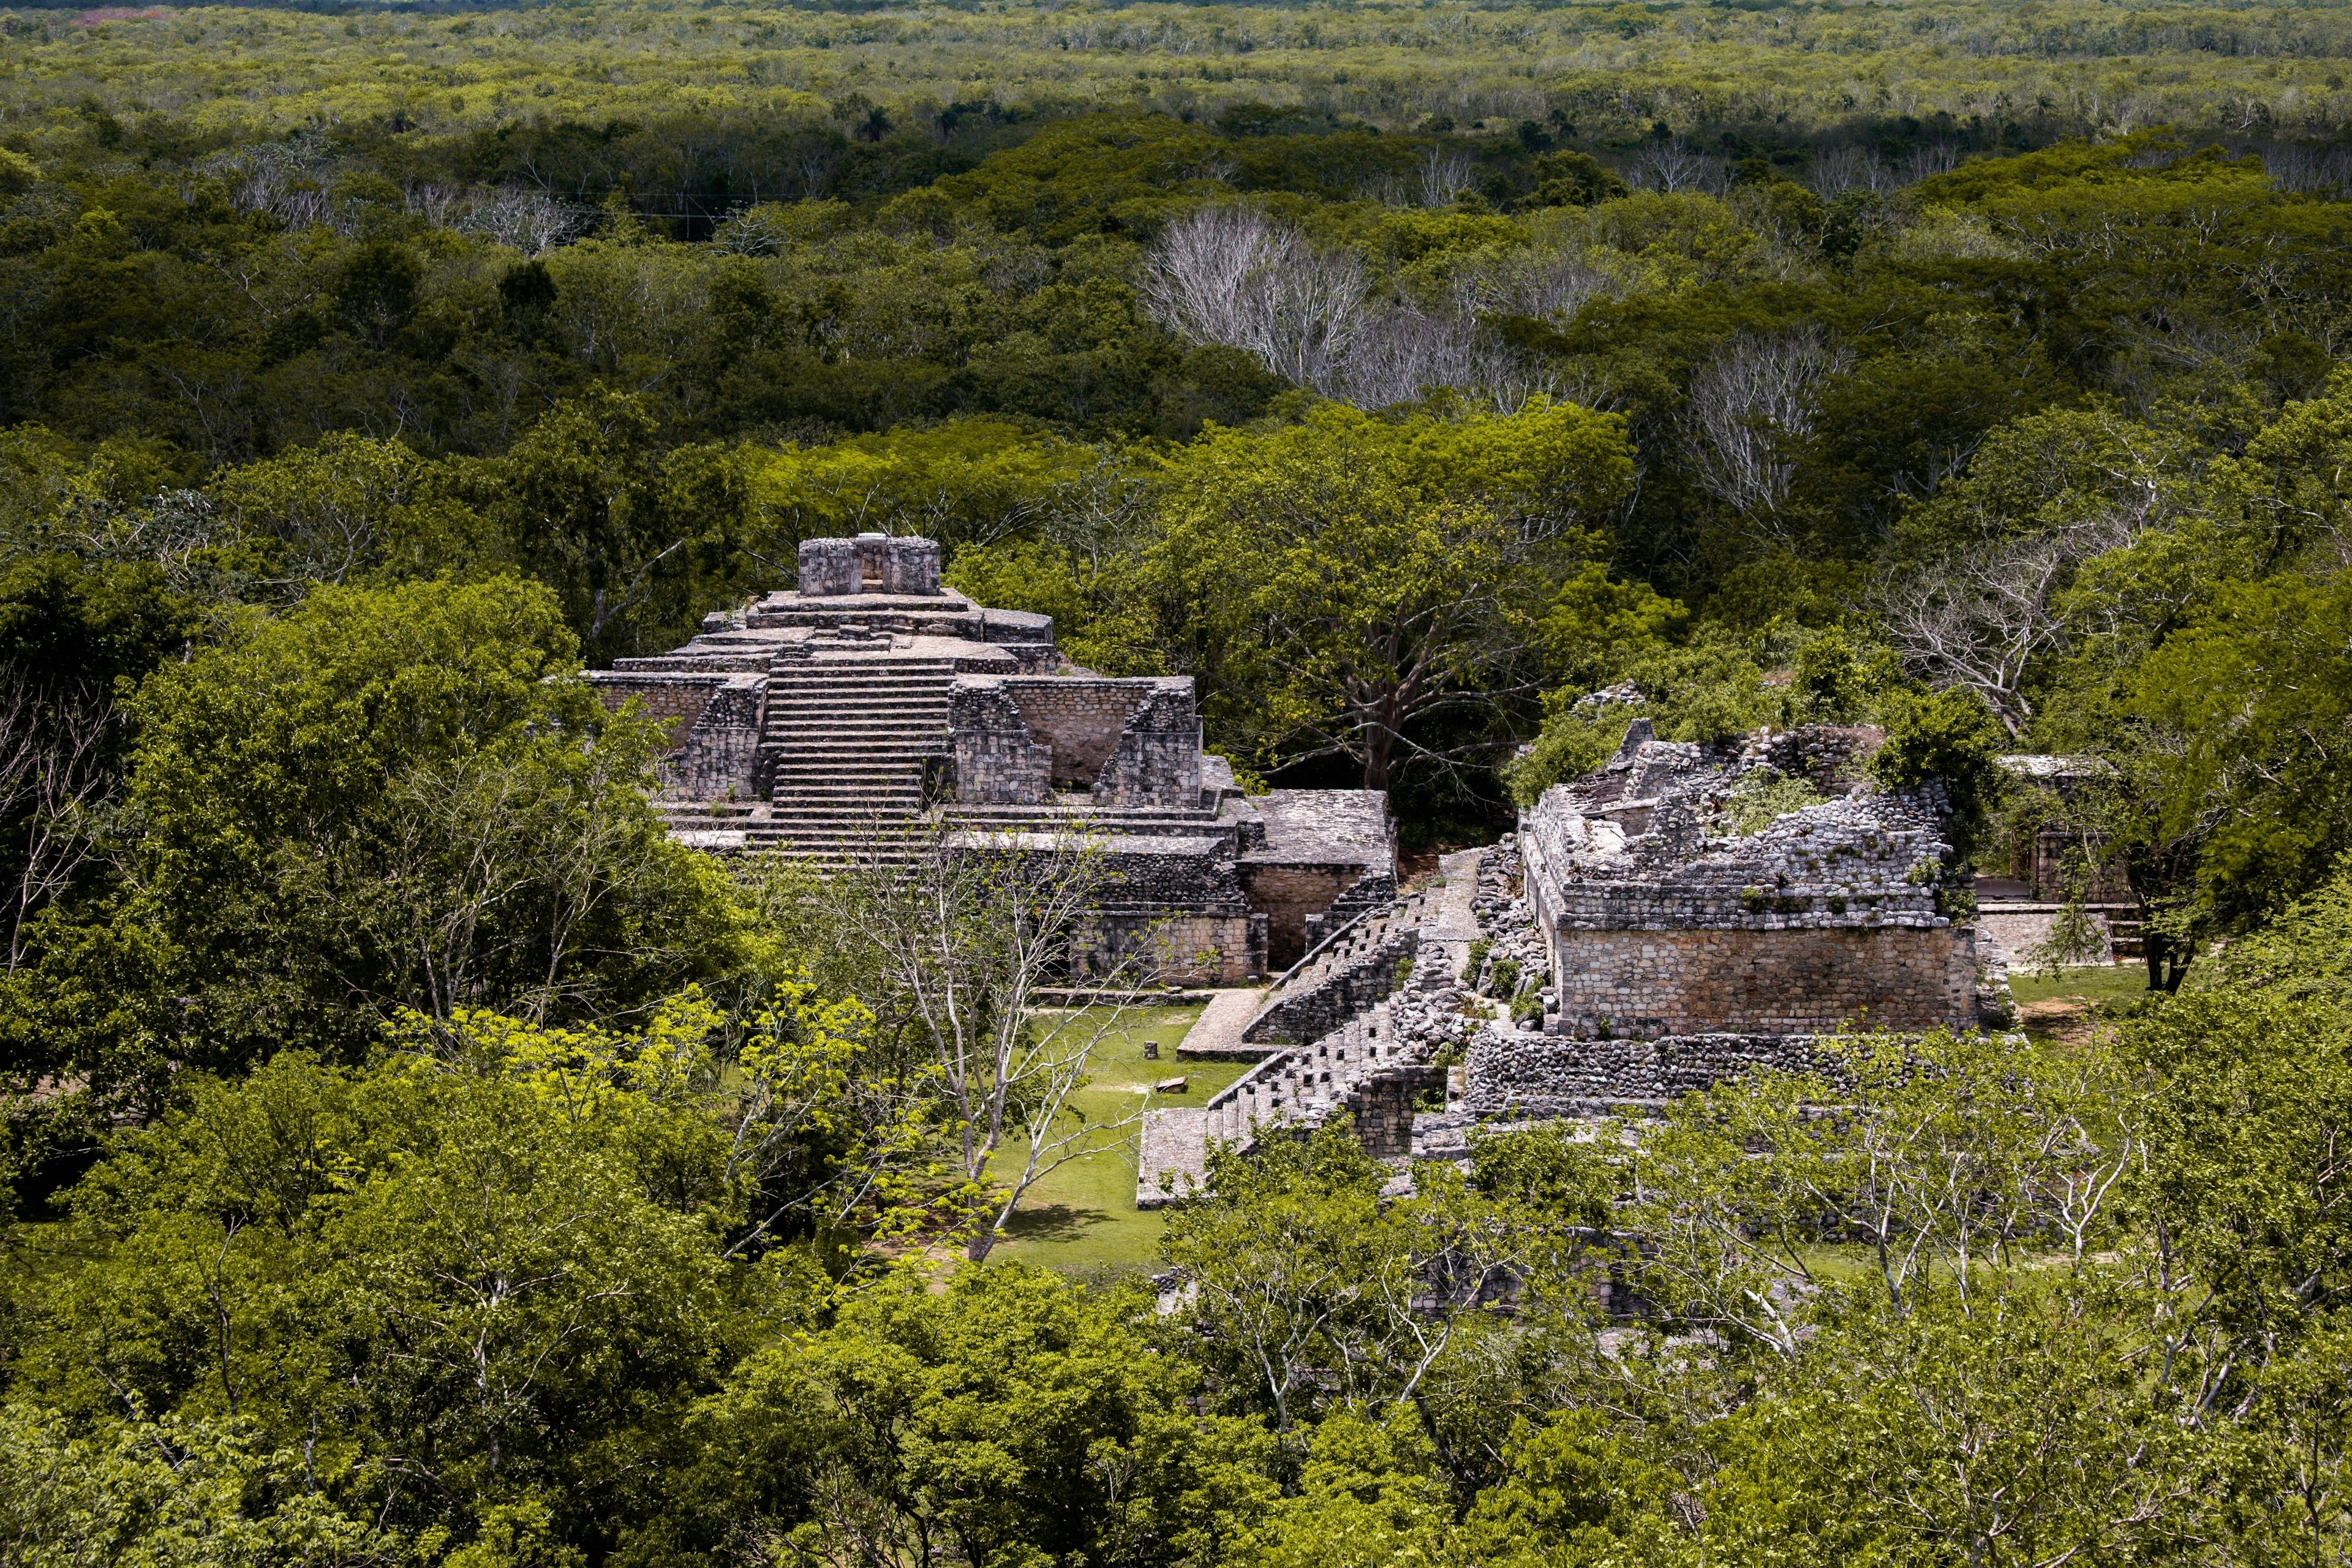 Ancient Mayan ruins of Ek Balam in Mexico